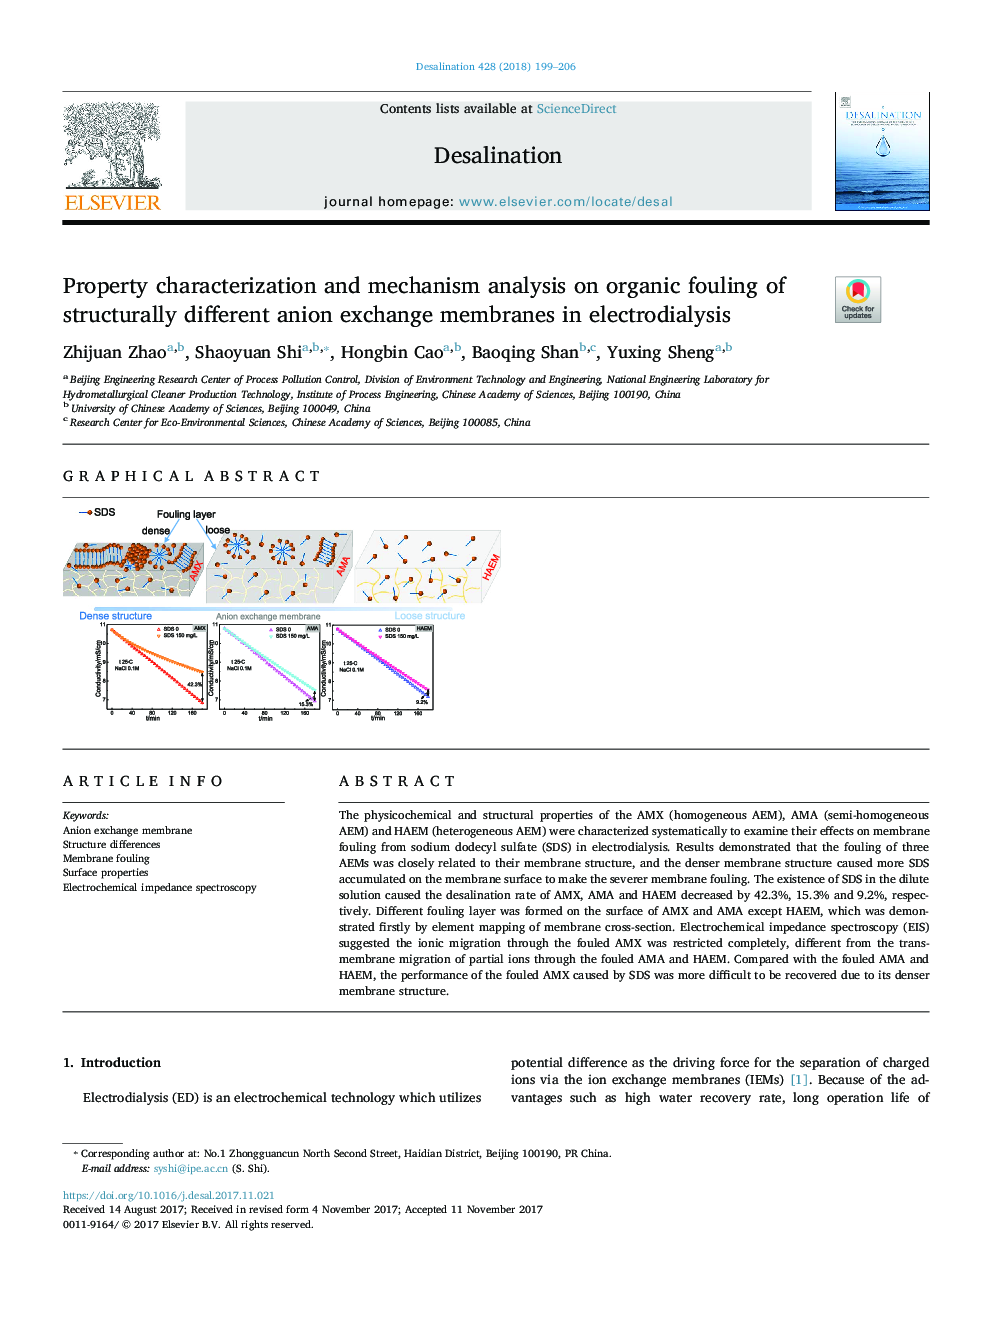 خصوصیات ملک و تجزیه و تحلیل مکانیزم بر روی رسوب آلی از غشاهای تبادل ساختاری آنیون در الکترو دی دیالیز 